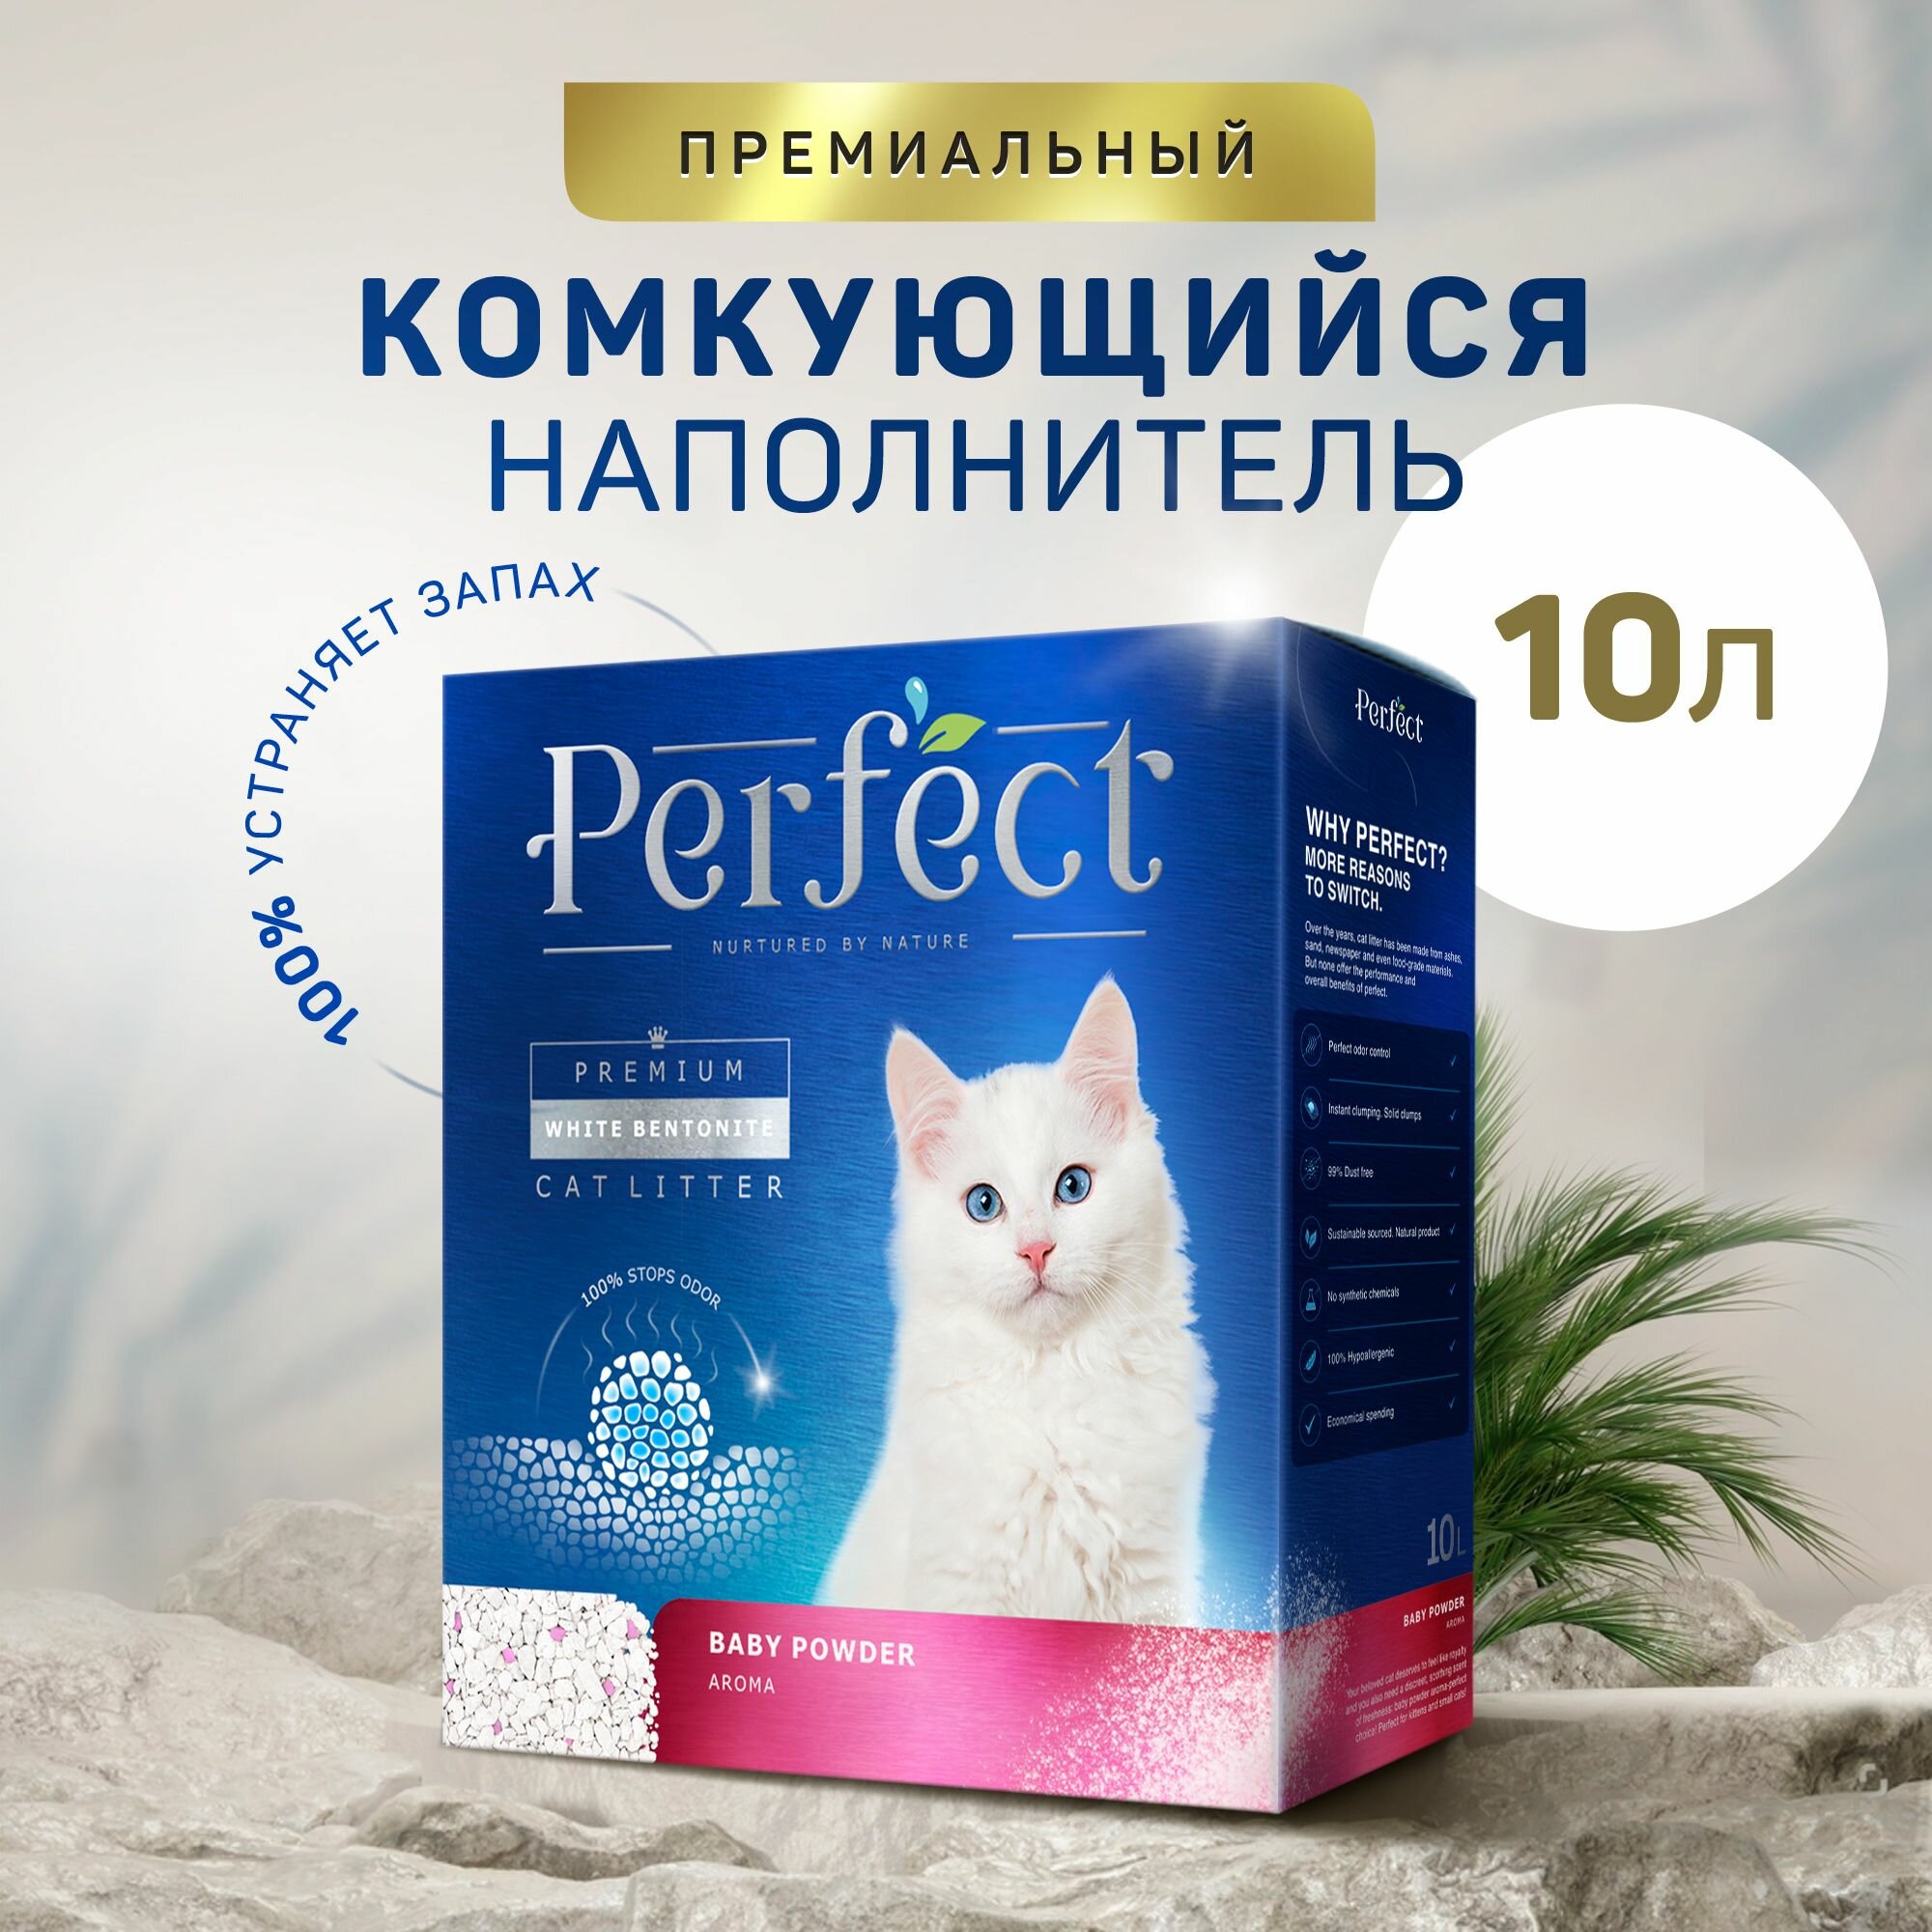 Наполнитель для кошачьего туалета аромат детской присыпки 10л Perfect Baby Powder Aroma